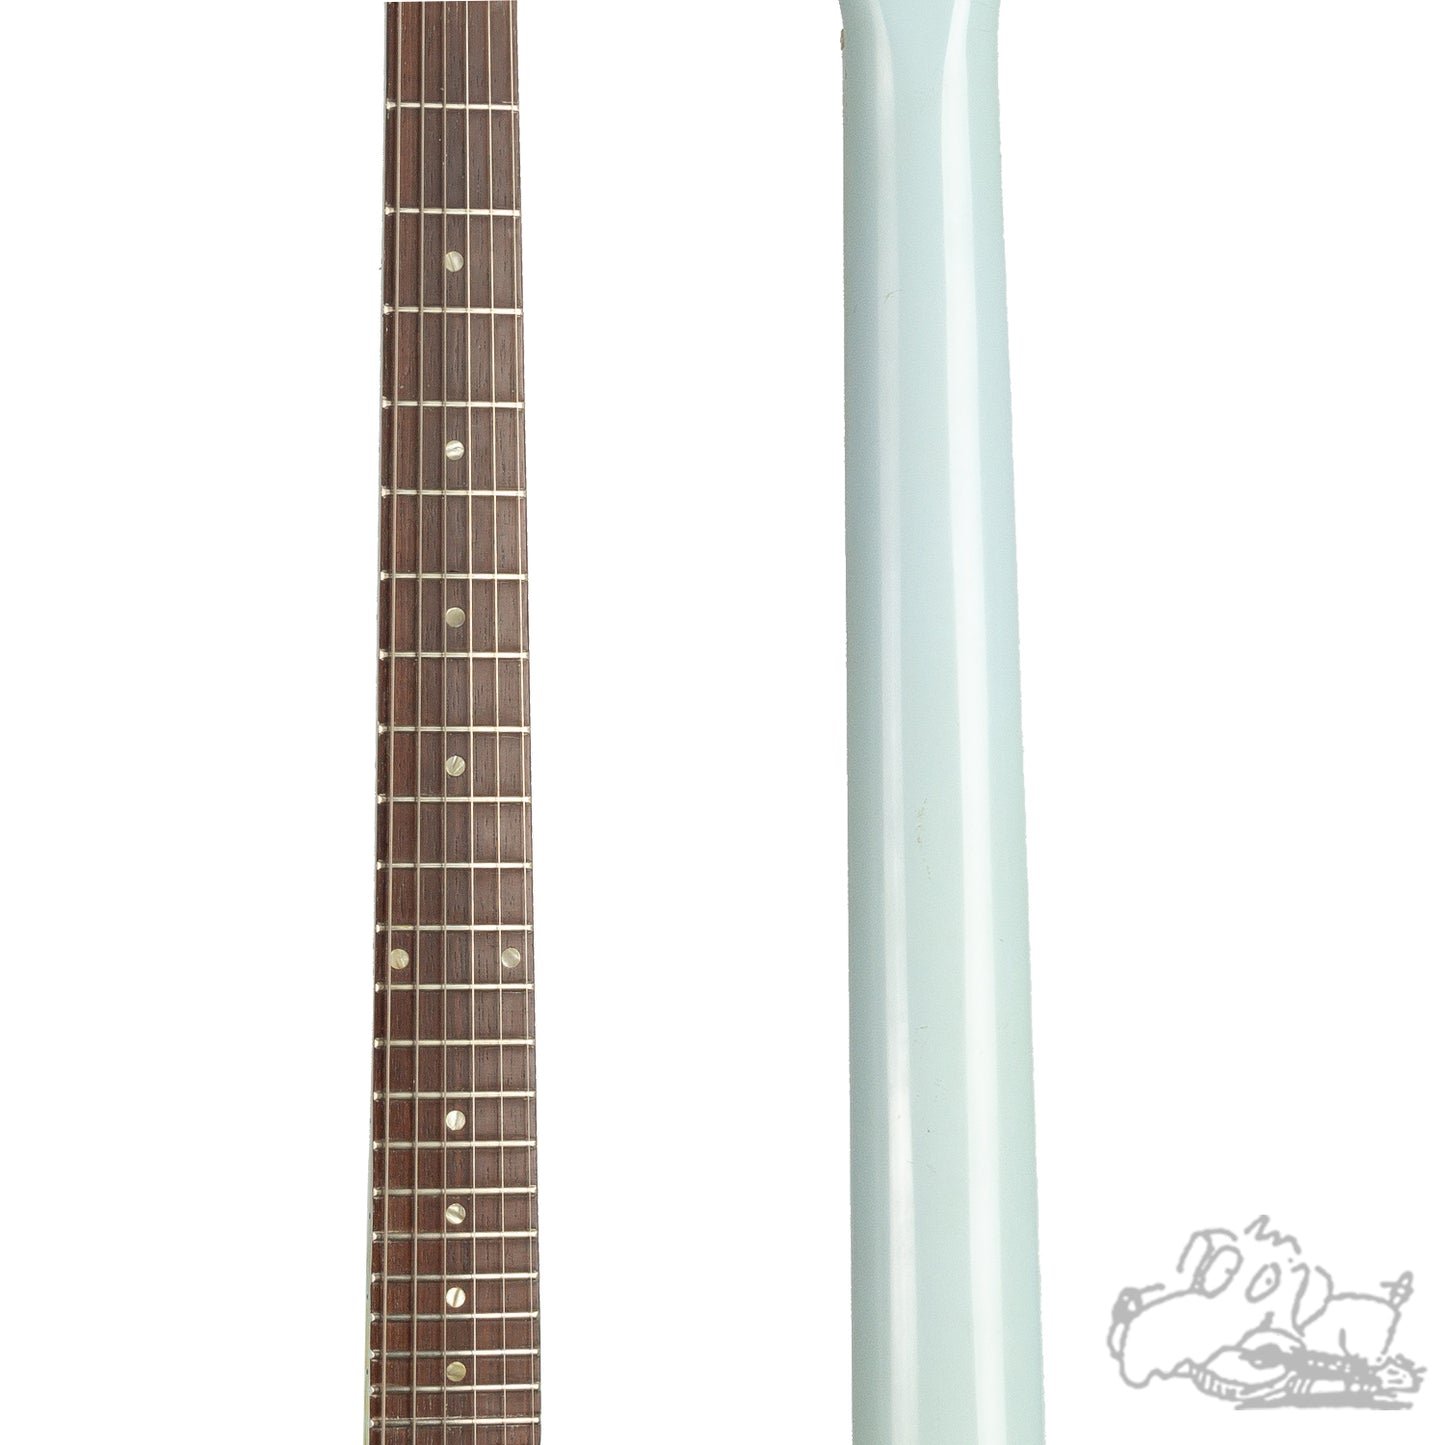 1965 Gibson Firebird I